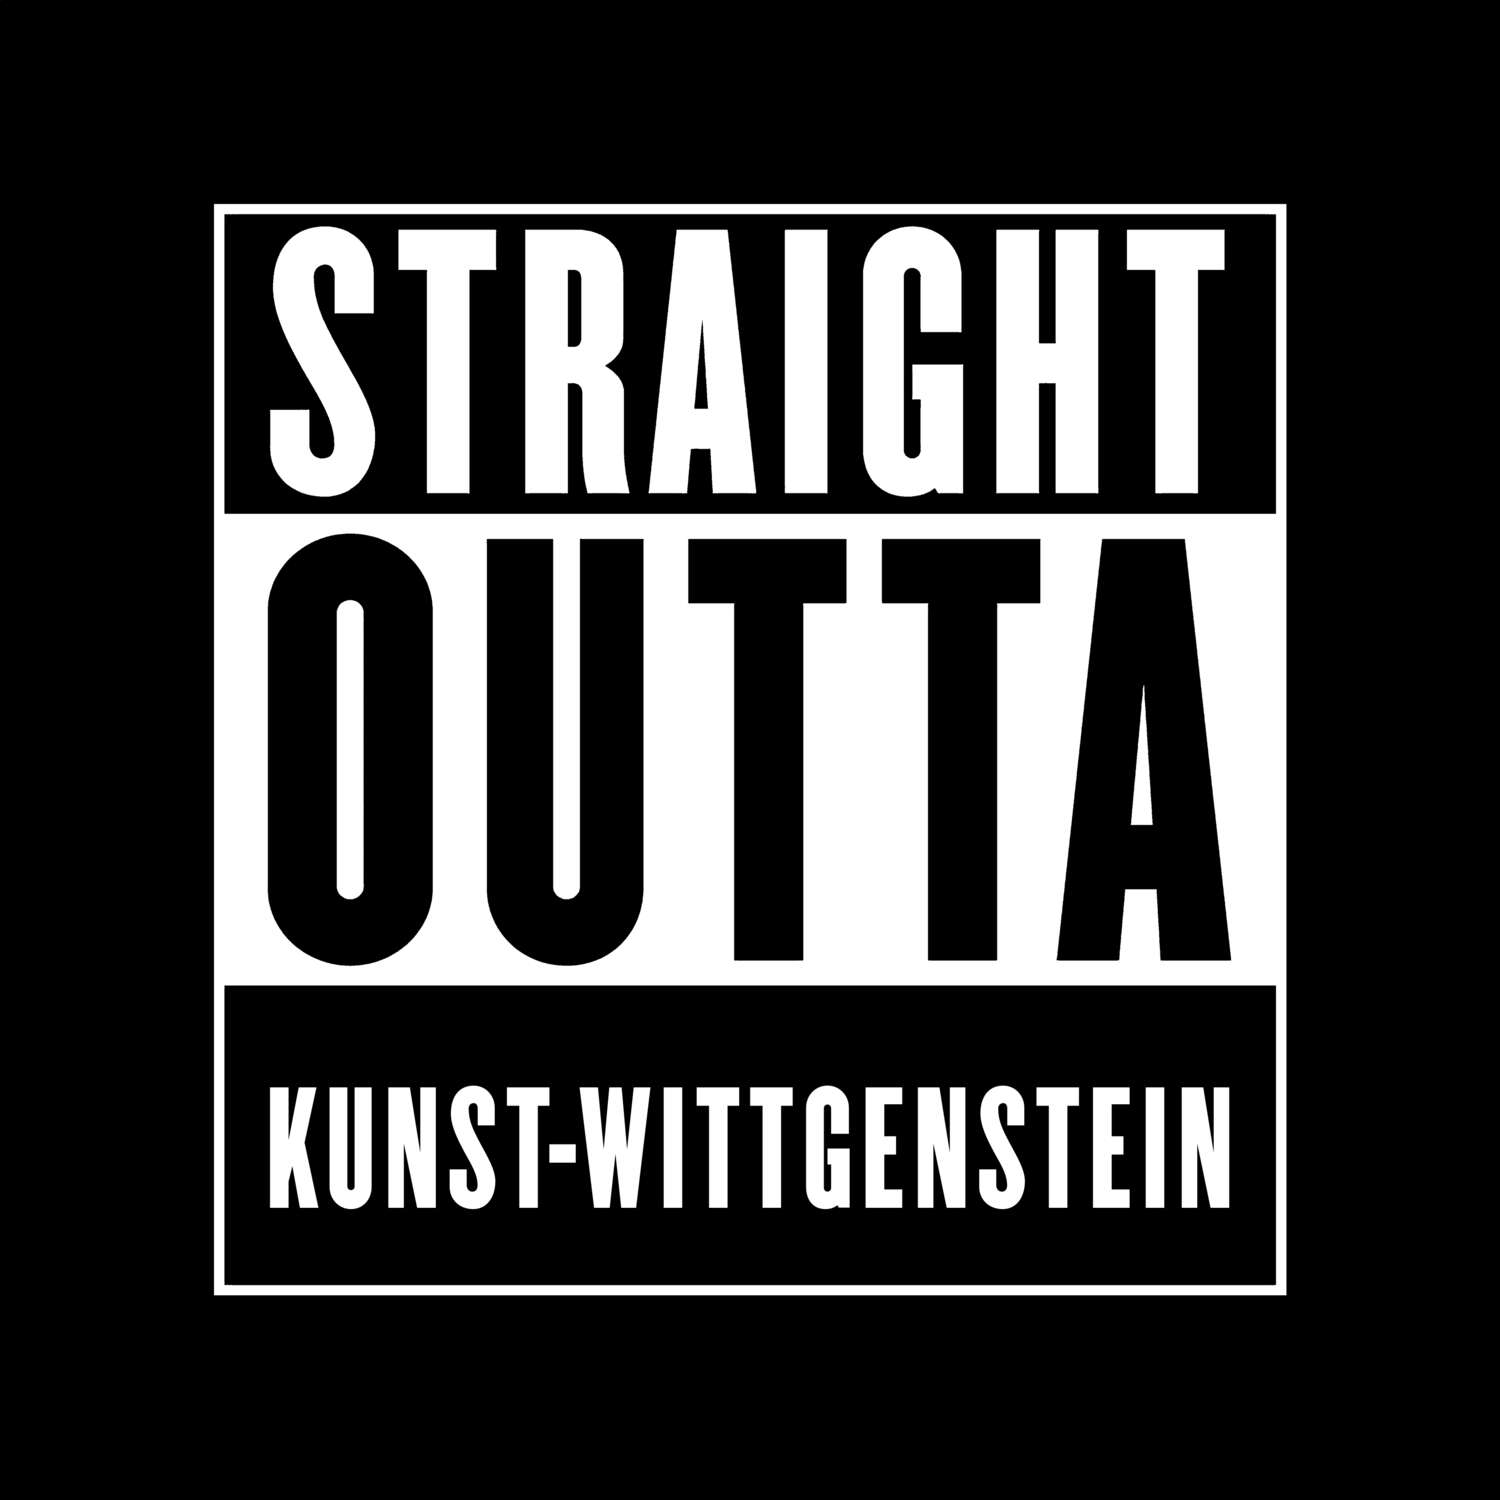 Kunst-Wittgenstein T-Shirt »Straight Outta«